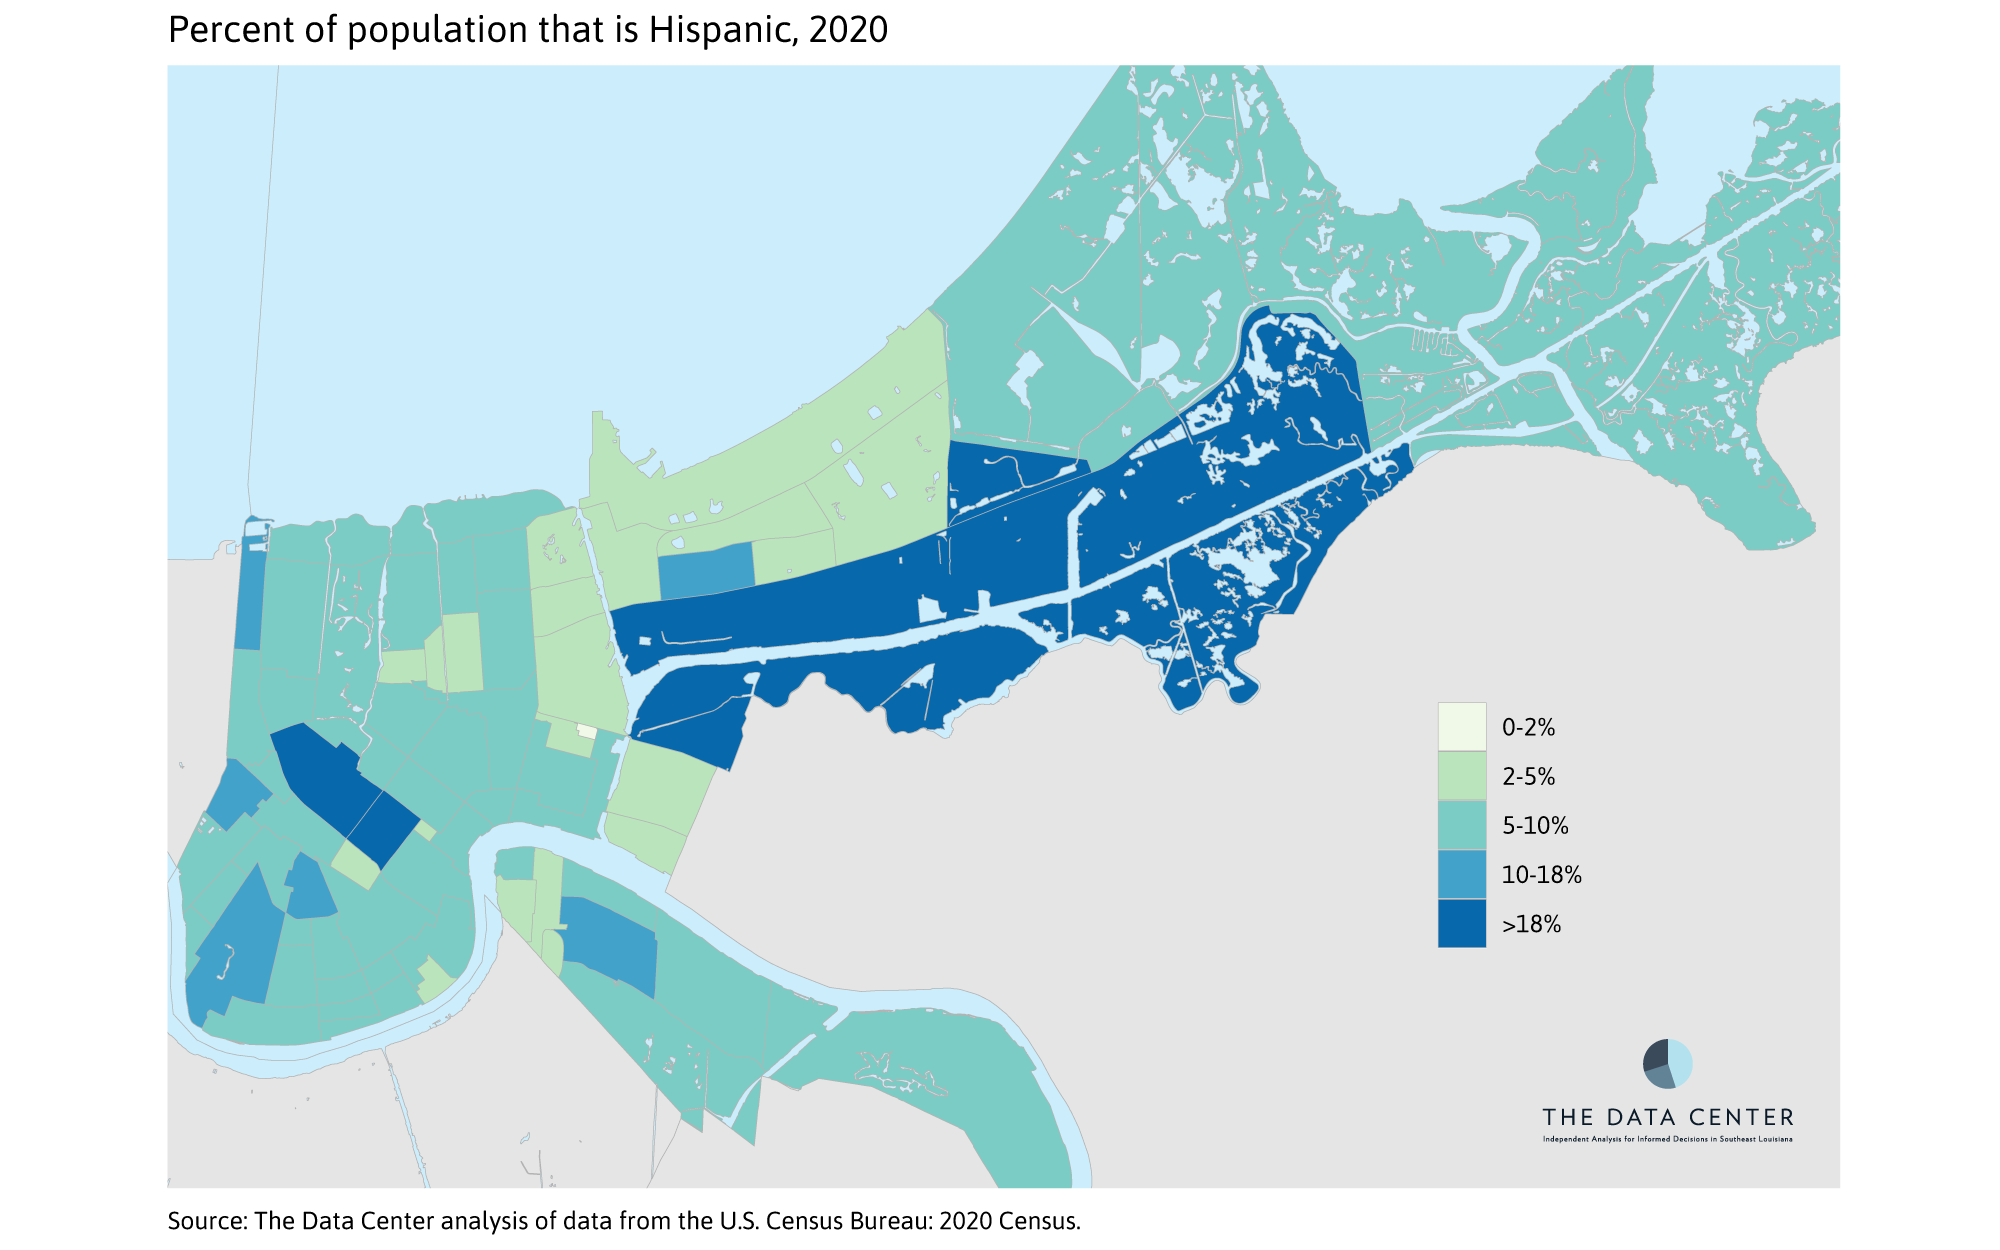 Percent Hispanic 2020